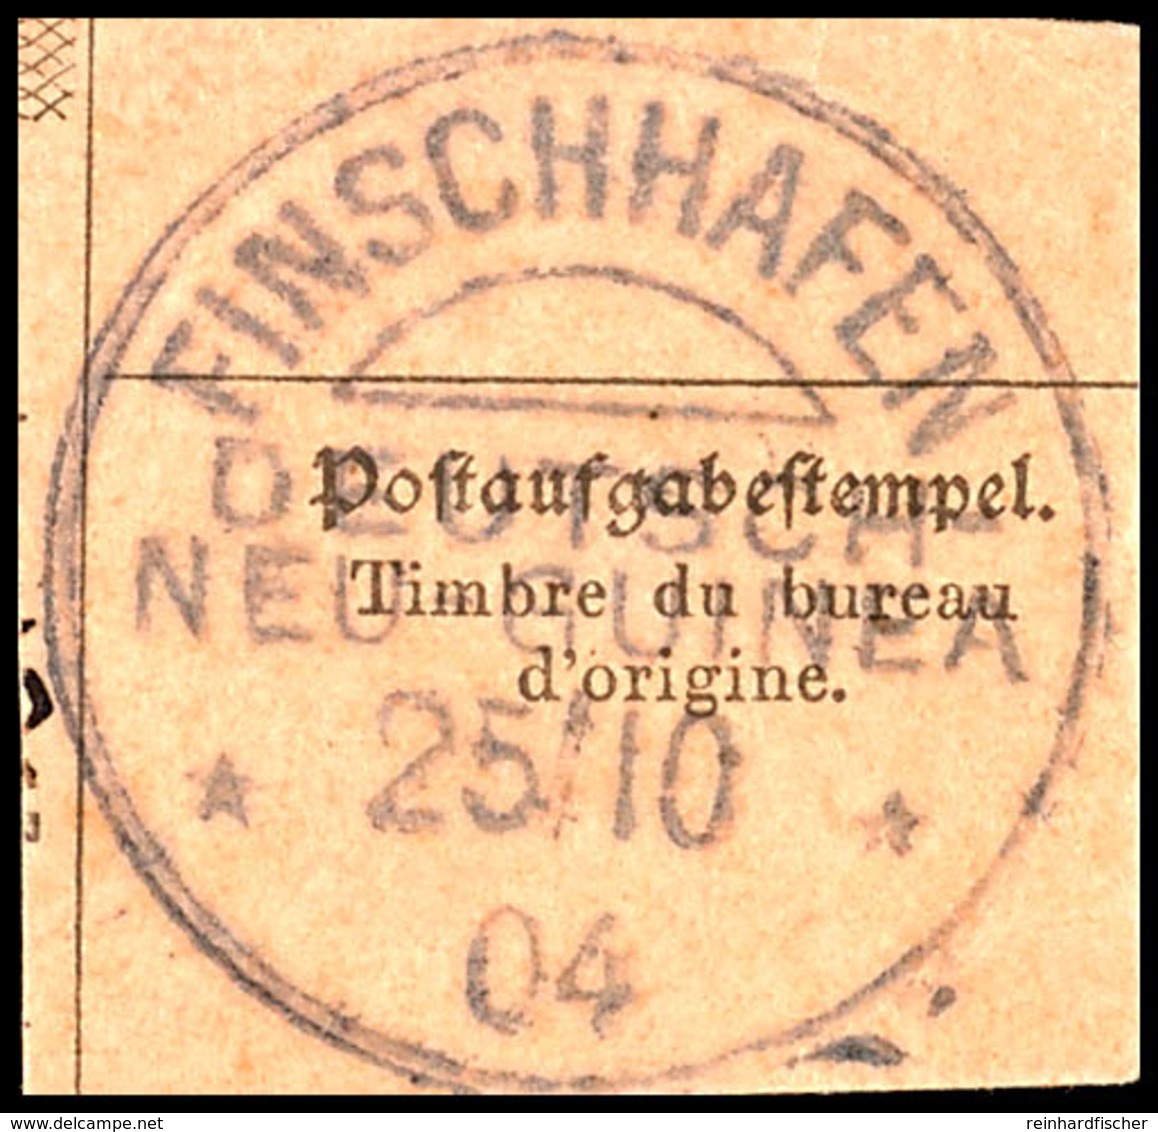 FINSCHHAFEN DNG 25/10 04, Klar Auf Postanweisungsausschnitt  BS - German New Guinea